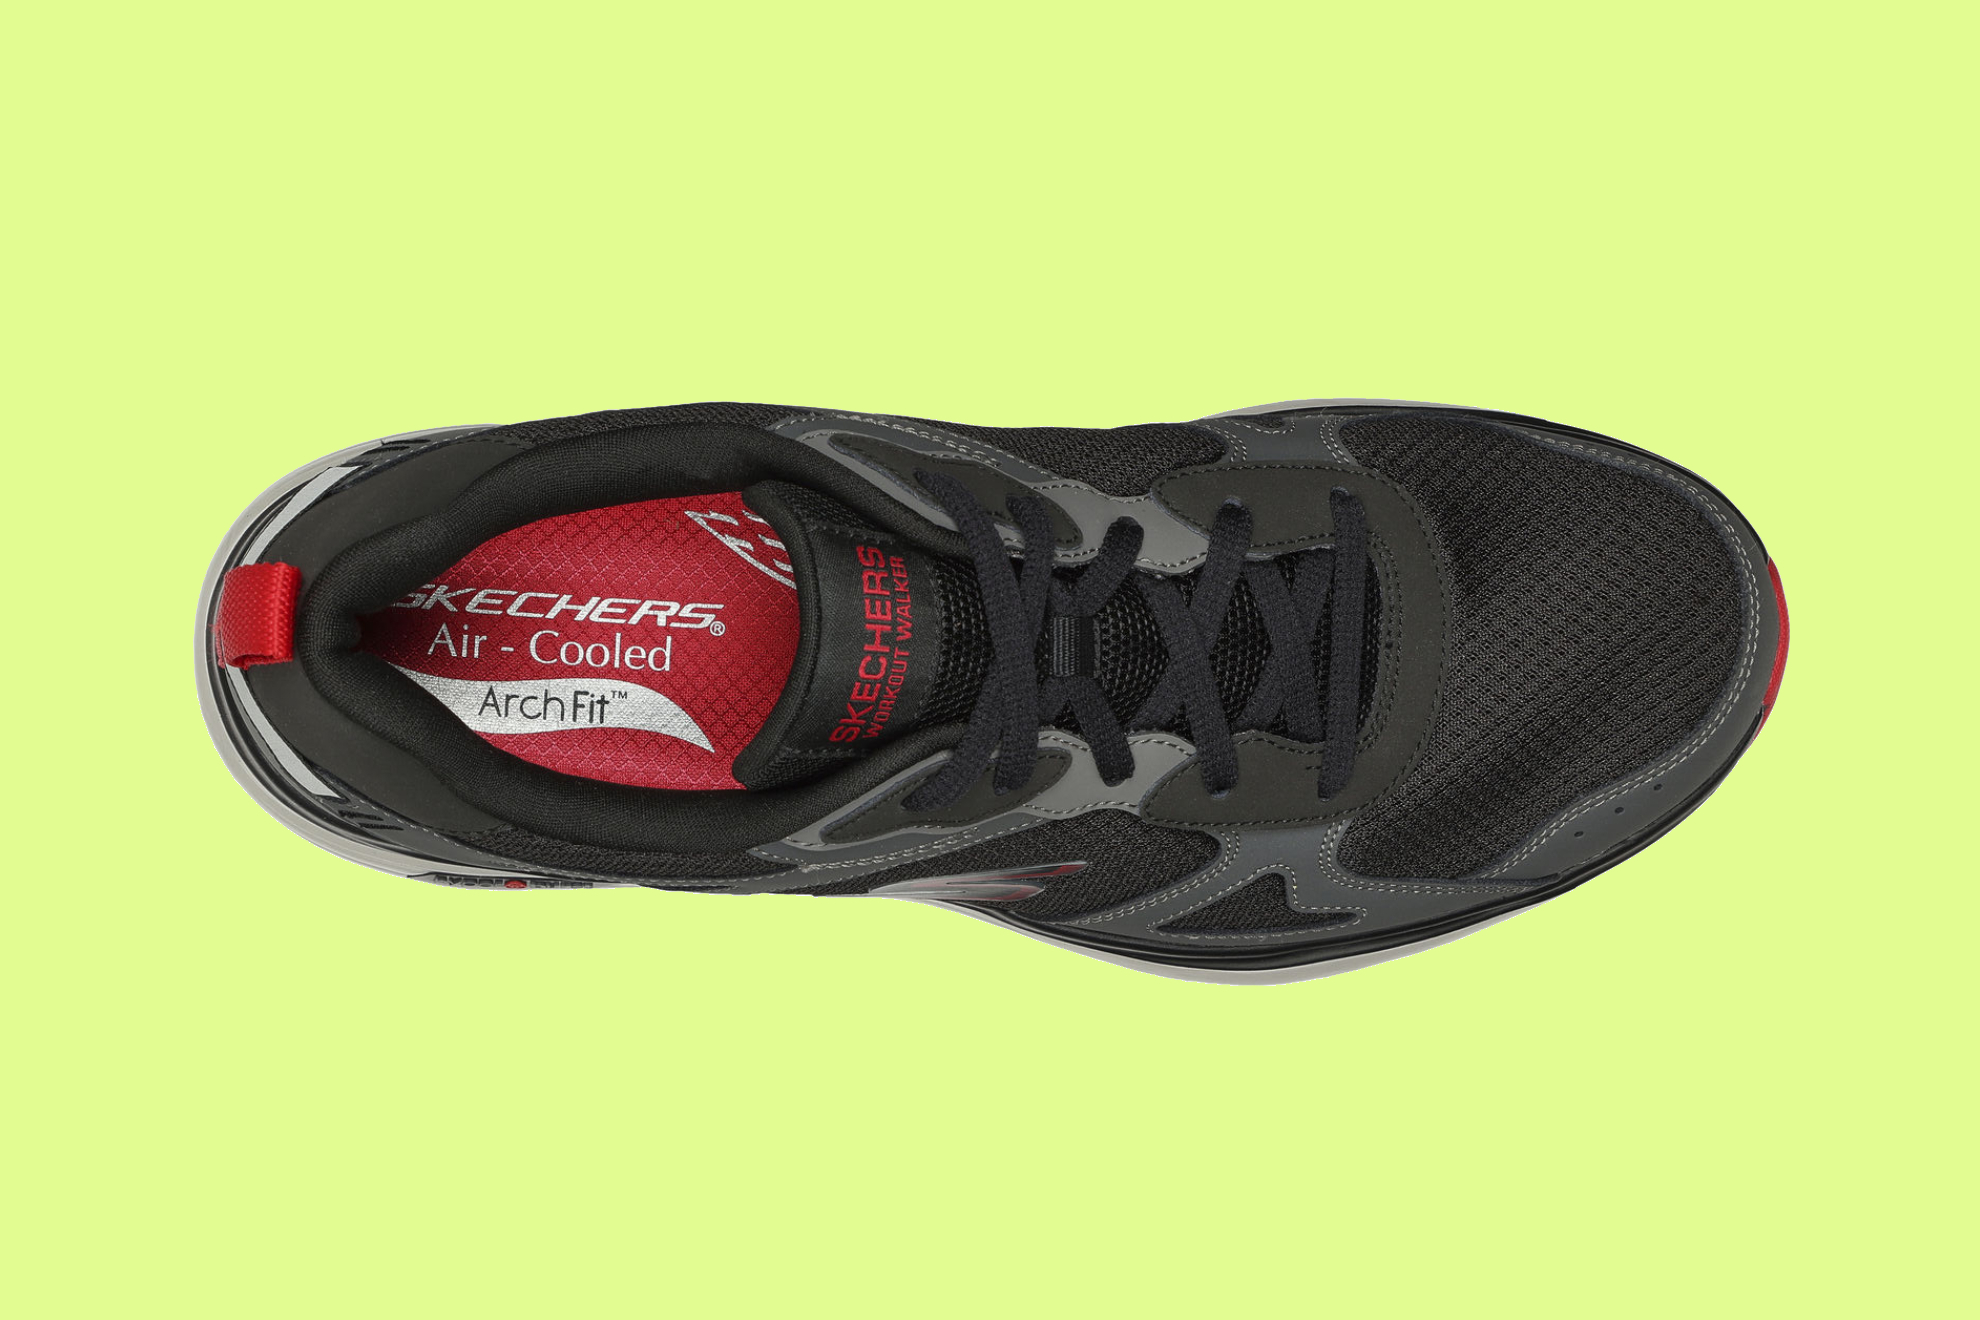 Probamos las nuevas Skechers Go Walk Workout Walker: de cómo unas zapatillas especialmente diseñadas para andar me curaron una lesión de tobillo Marca